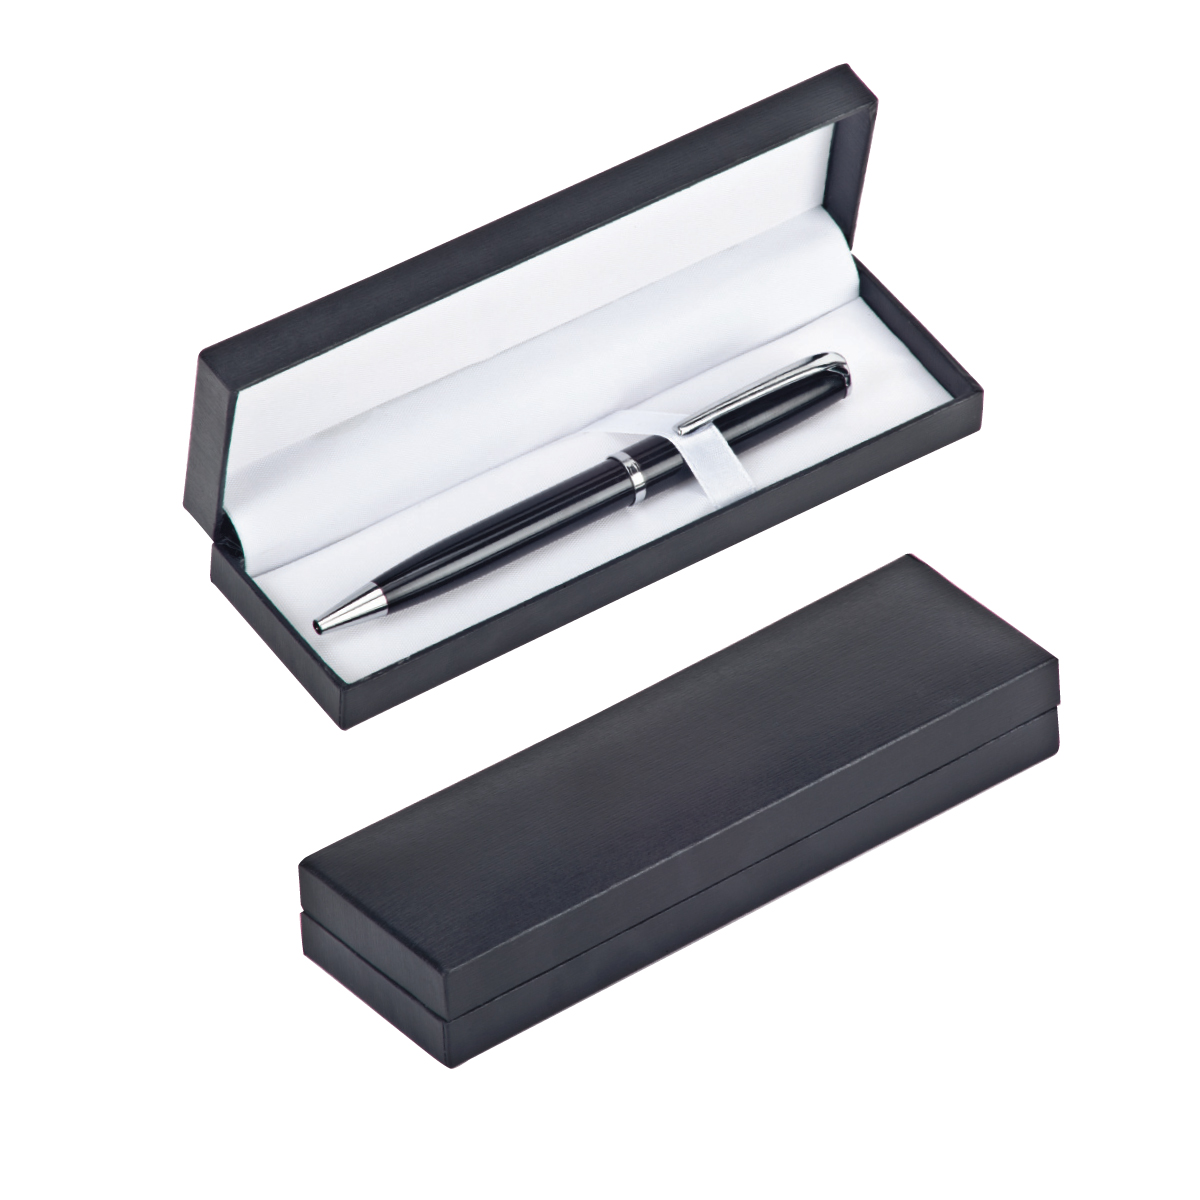 קופסא מהודרת מפלסטיק. מתאימה לעט בודד או זוג עטים. אריזת מתנה. 